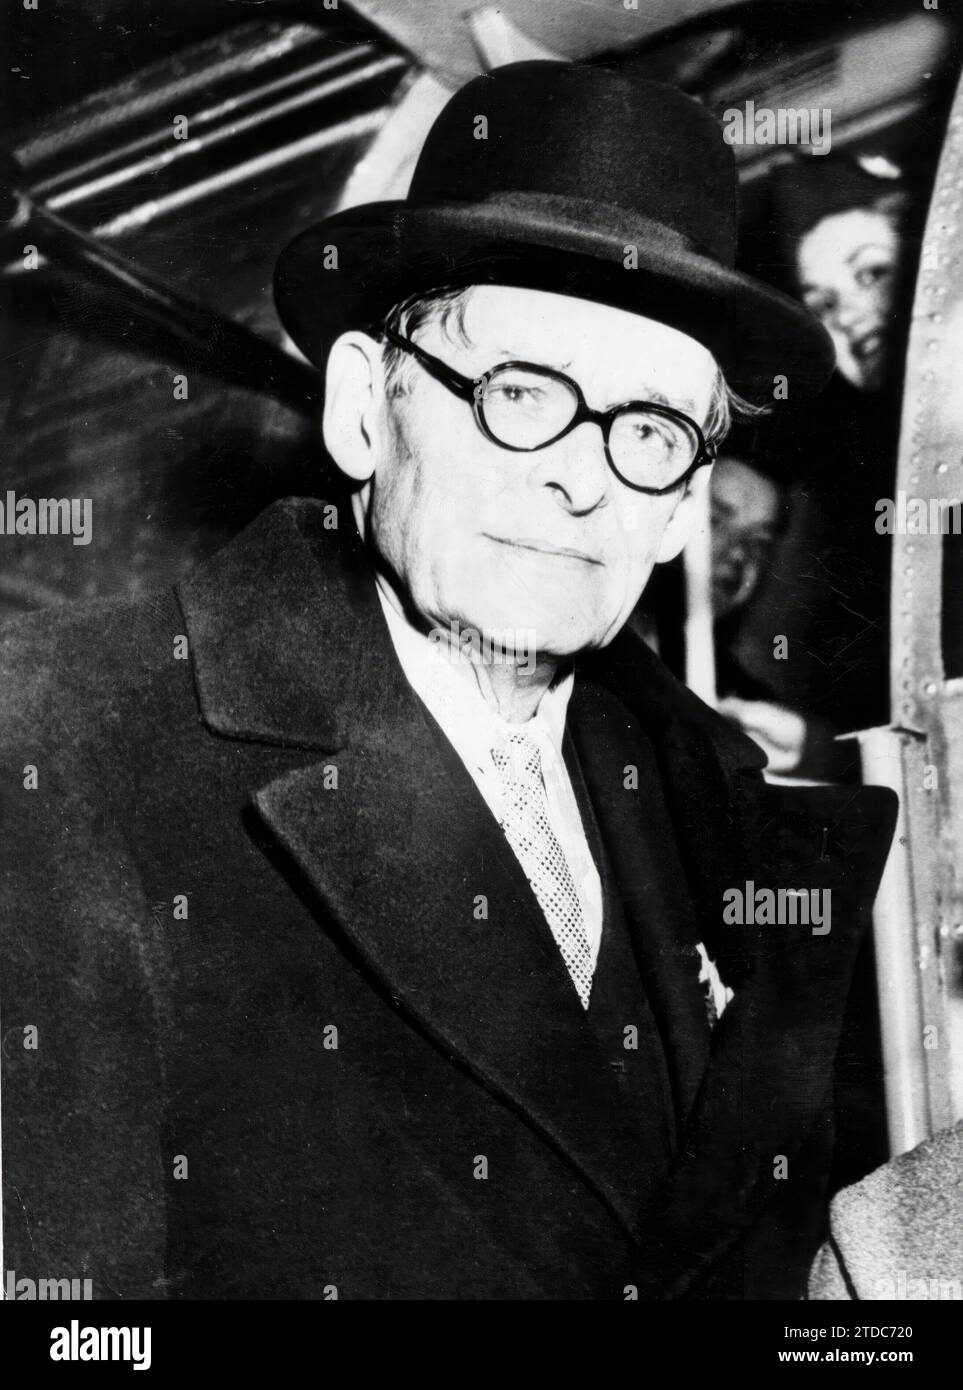 12/31/1959. Una delle ultime fotografie di Eliot. Crediti: Album / Archivo ABC Foto Stock